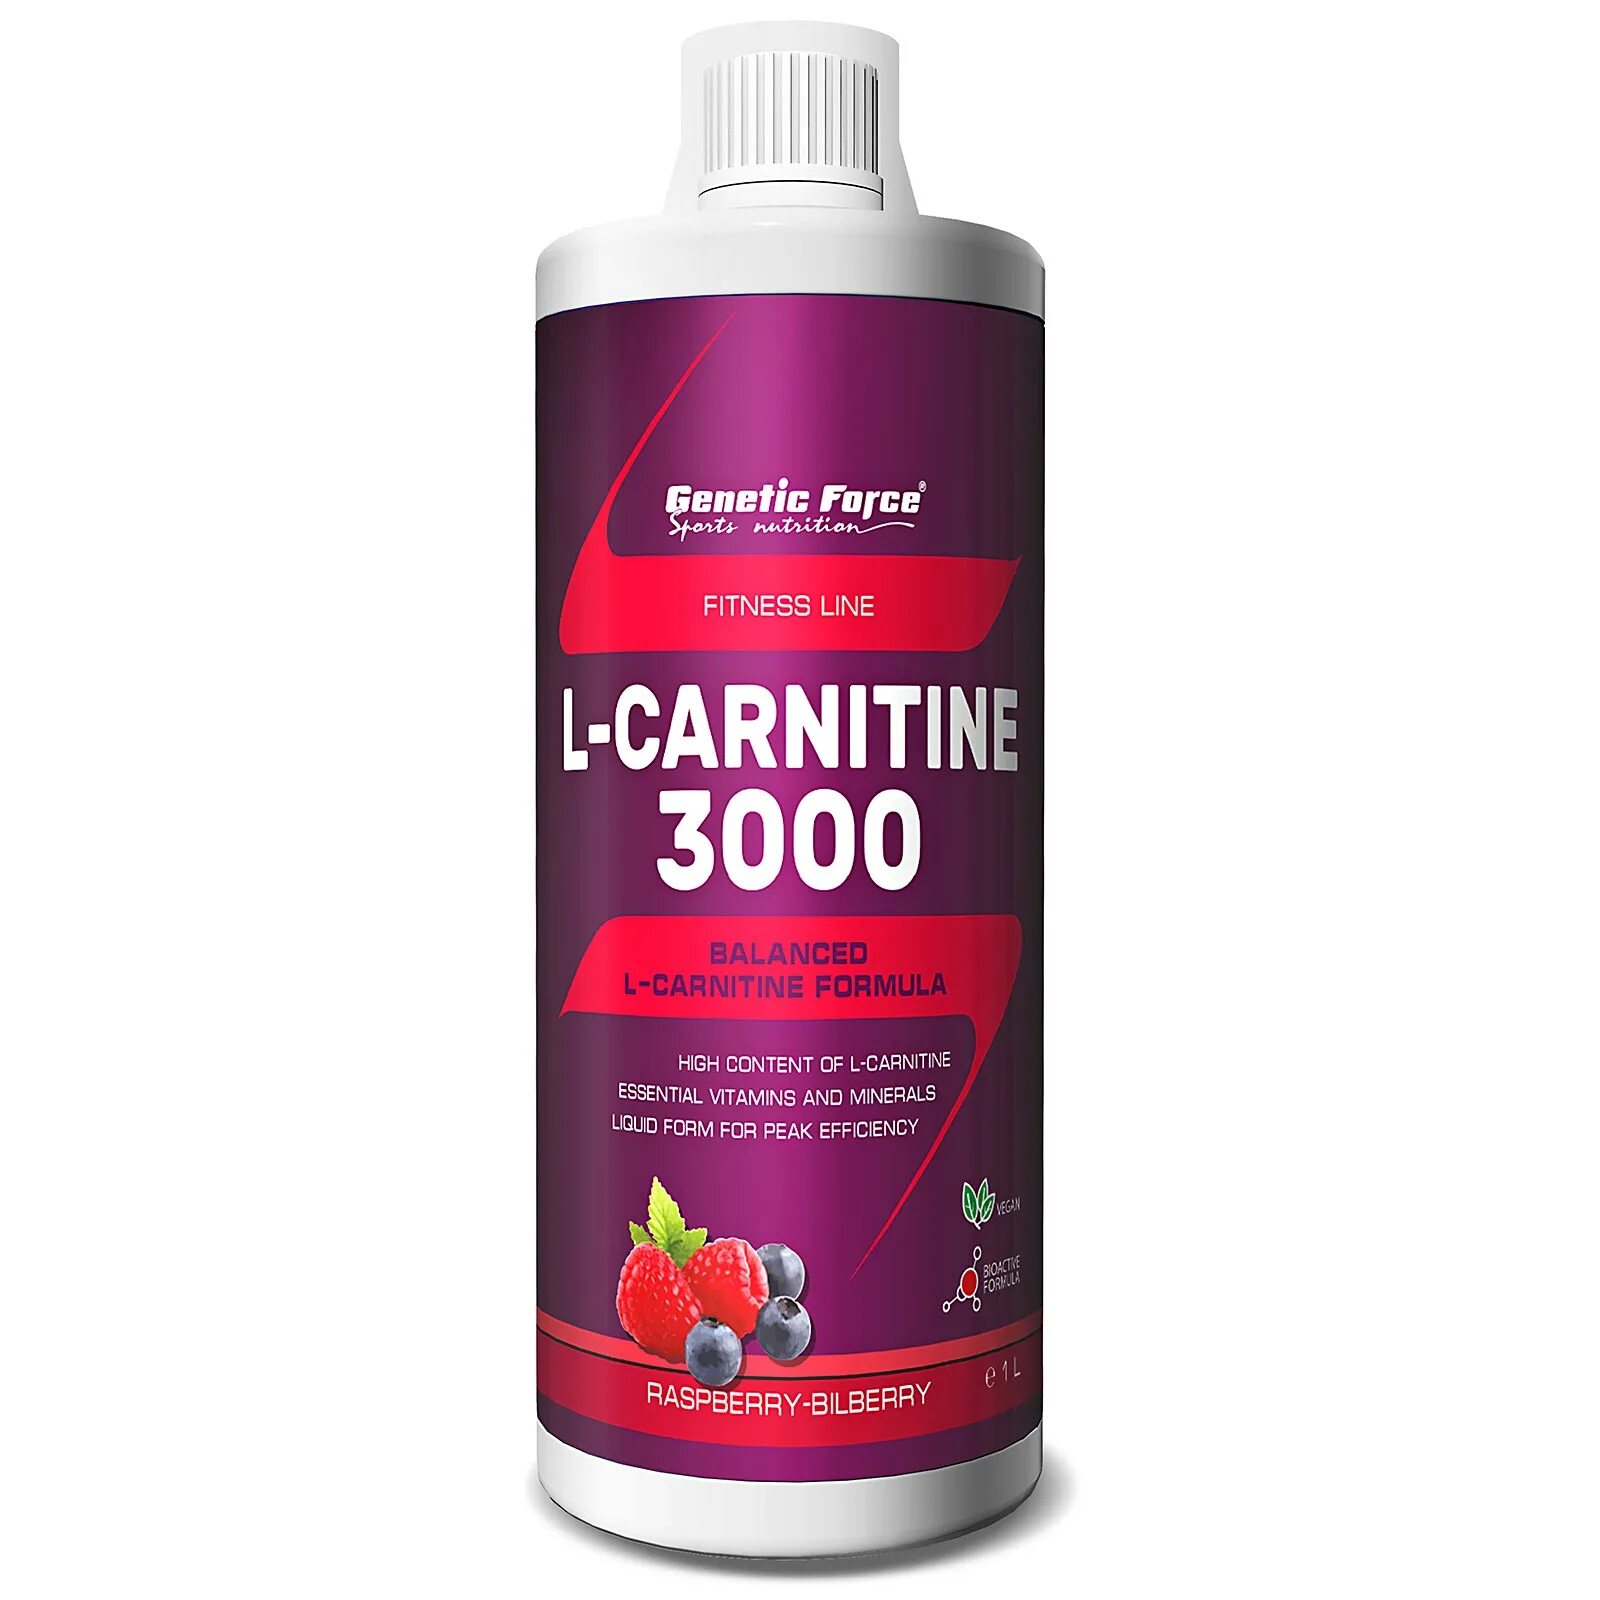 Элькарнитин инструкция по применению цена отзывы. L Carnitine genetic Force 3600. L-Carnitin 3000. RS Л карнитин 3000. VPLAB L-карнитин 3000 shot.